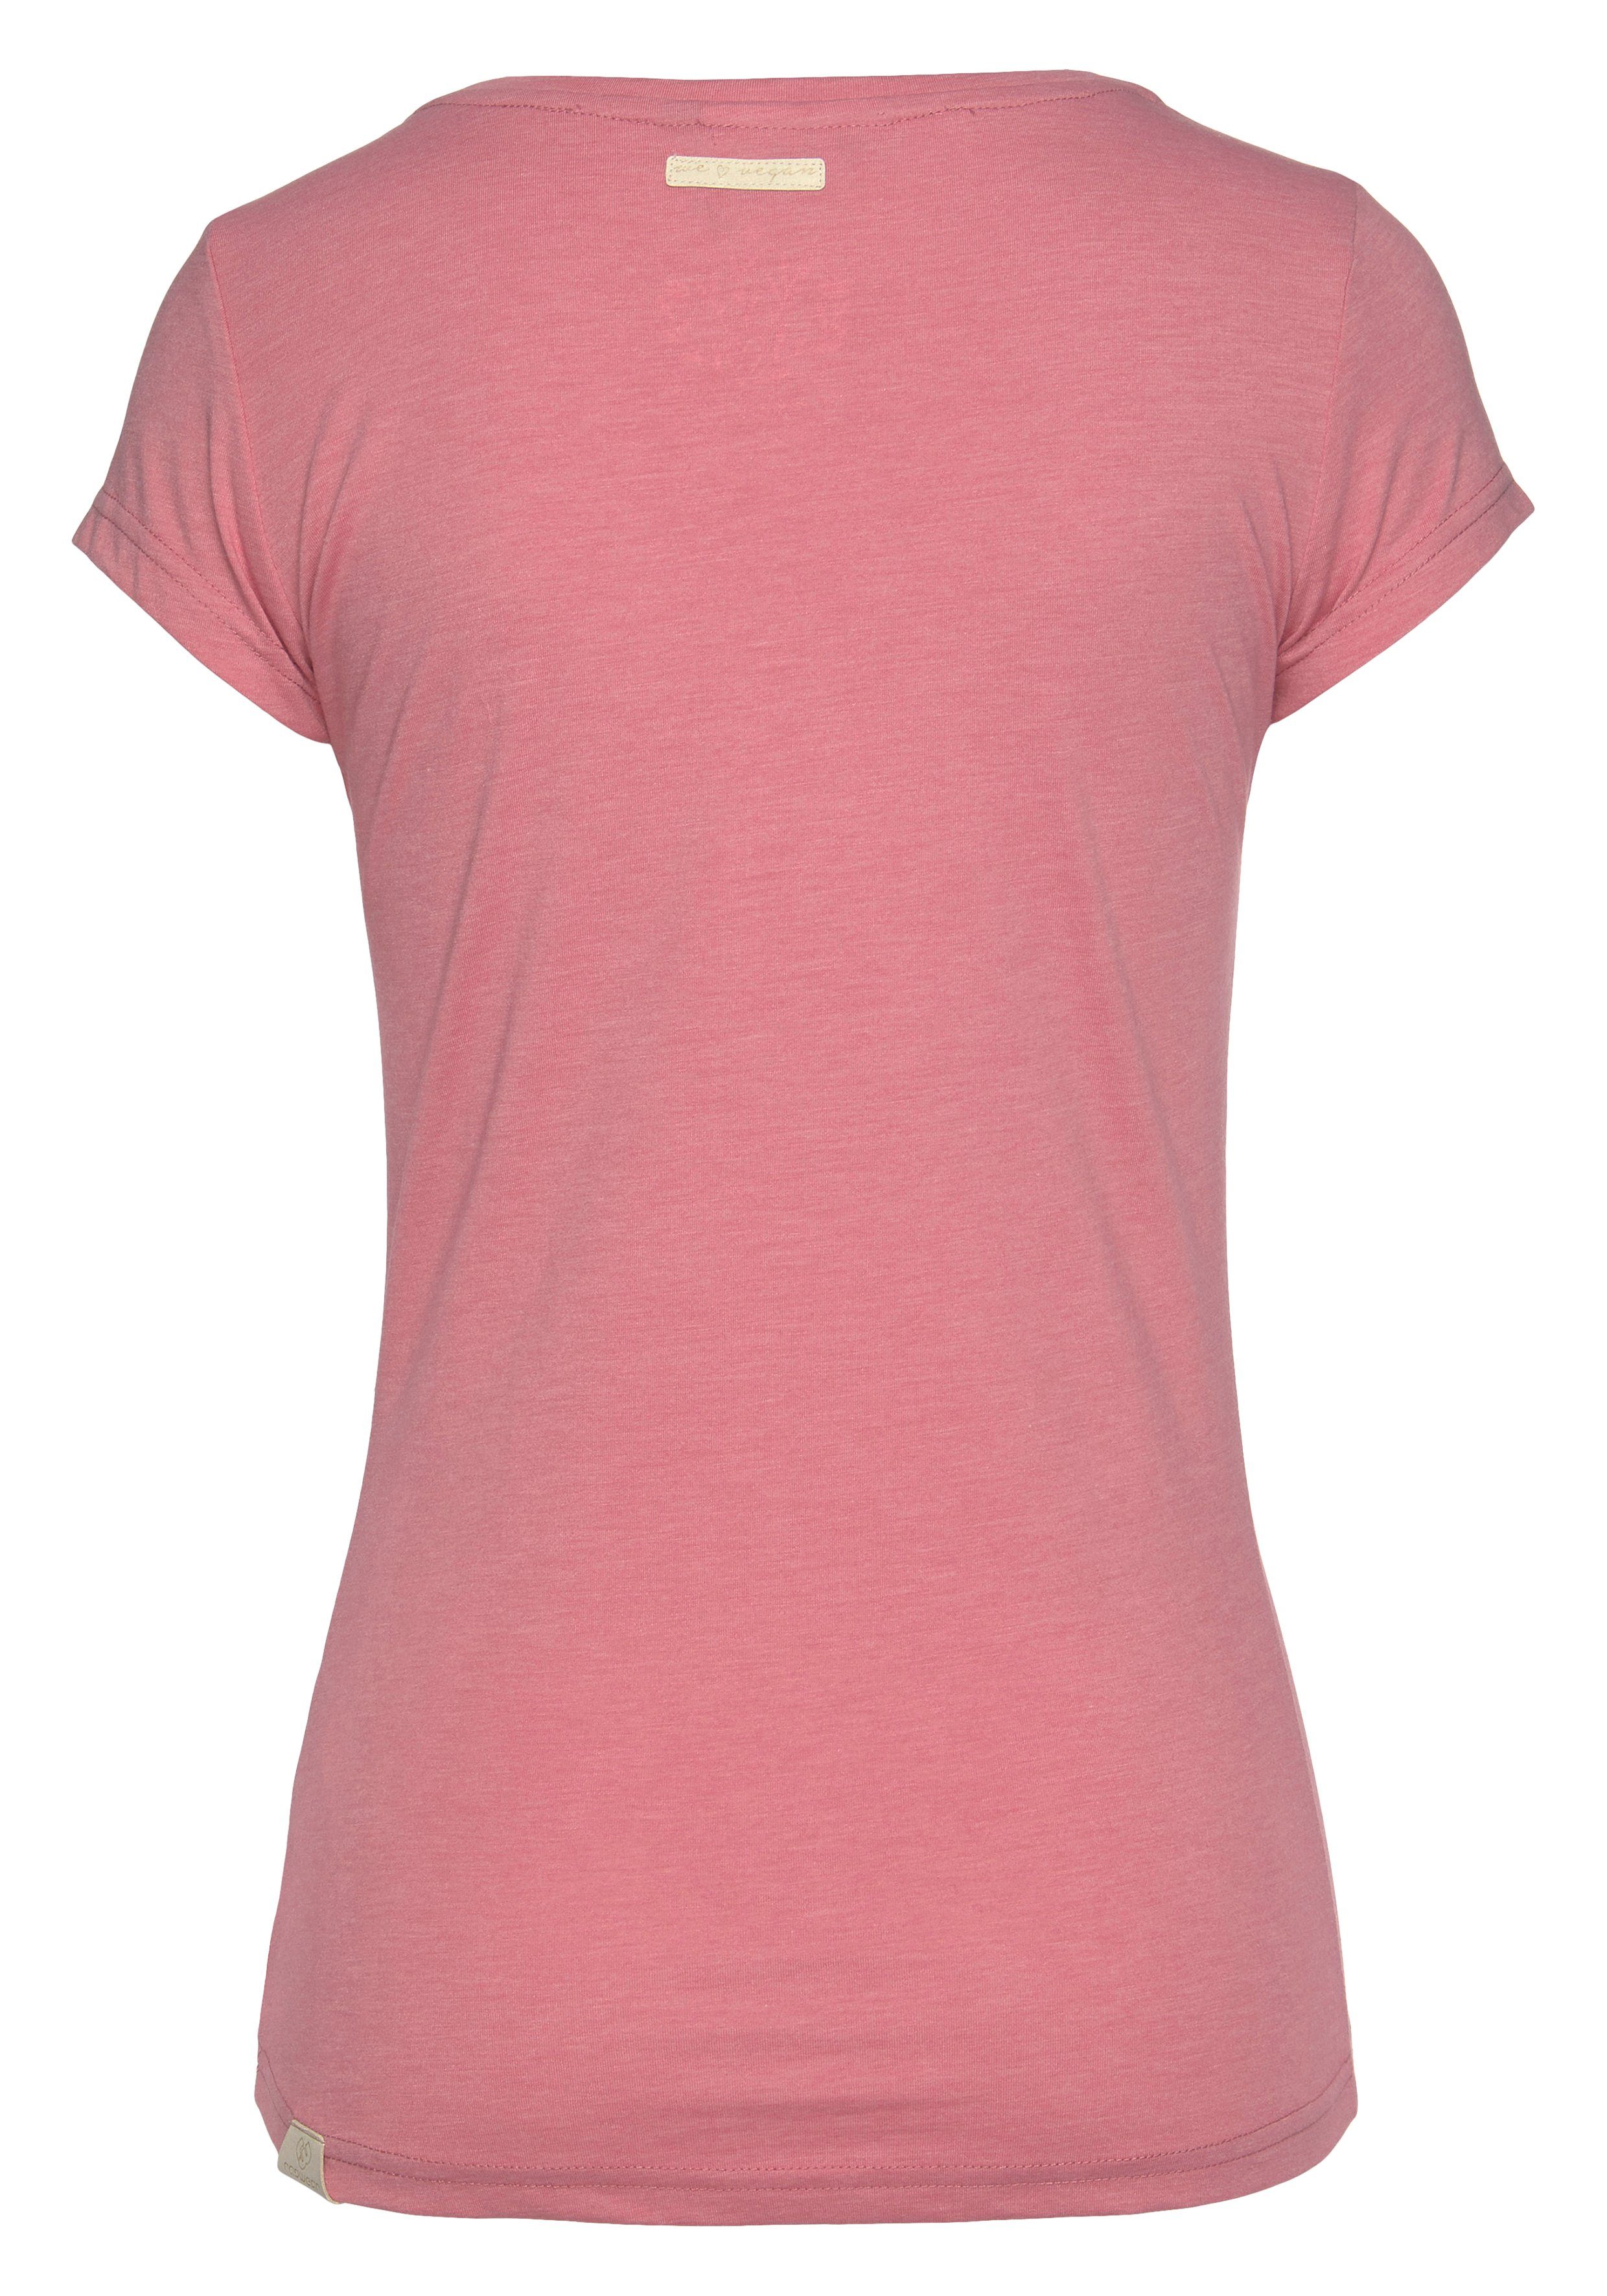 Ragwear T-Shirt MINT pink 4043 in mit O Logoschriftzug Zierknopf-Applikation und Holzoptik natürlicher